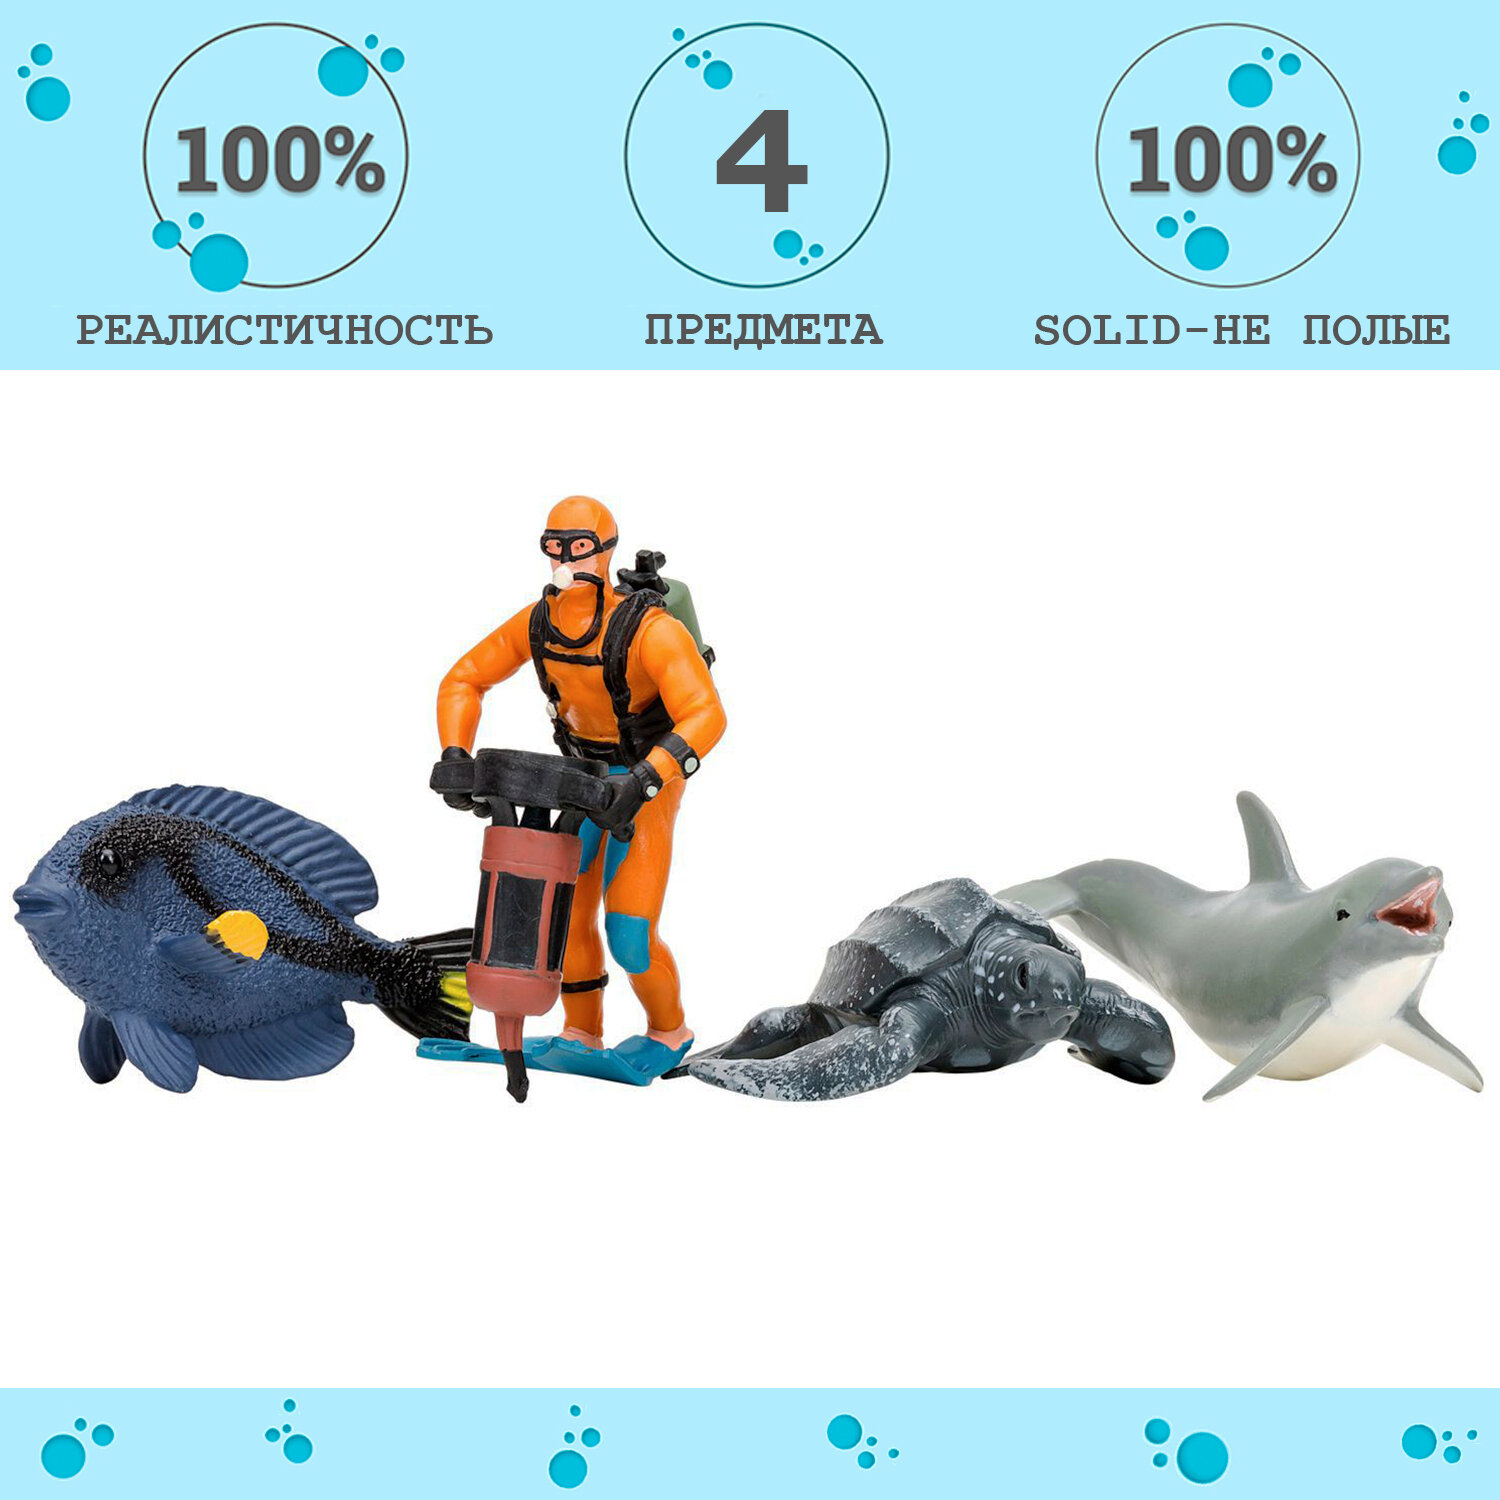 Фигурки игрушки серии "Мир морских животных": Дельфин, кожистая черепаха, рыбка-хирург, дайвер (набор из 3 фигурок животных и 1 человека)